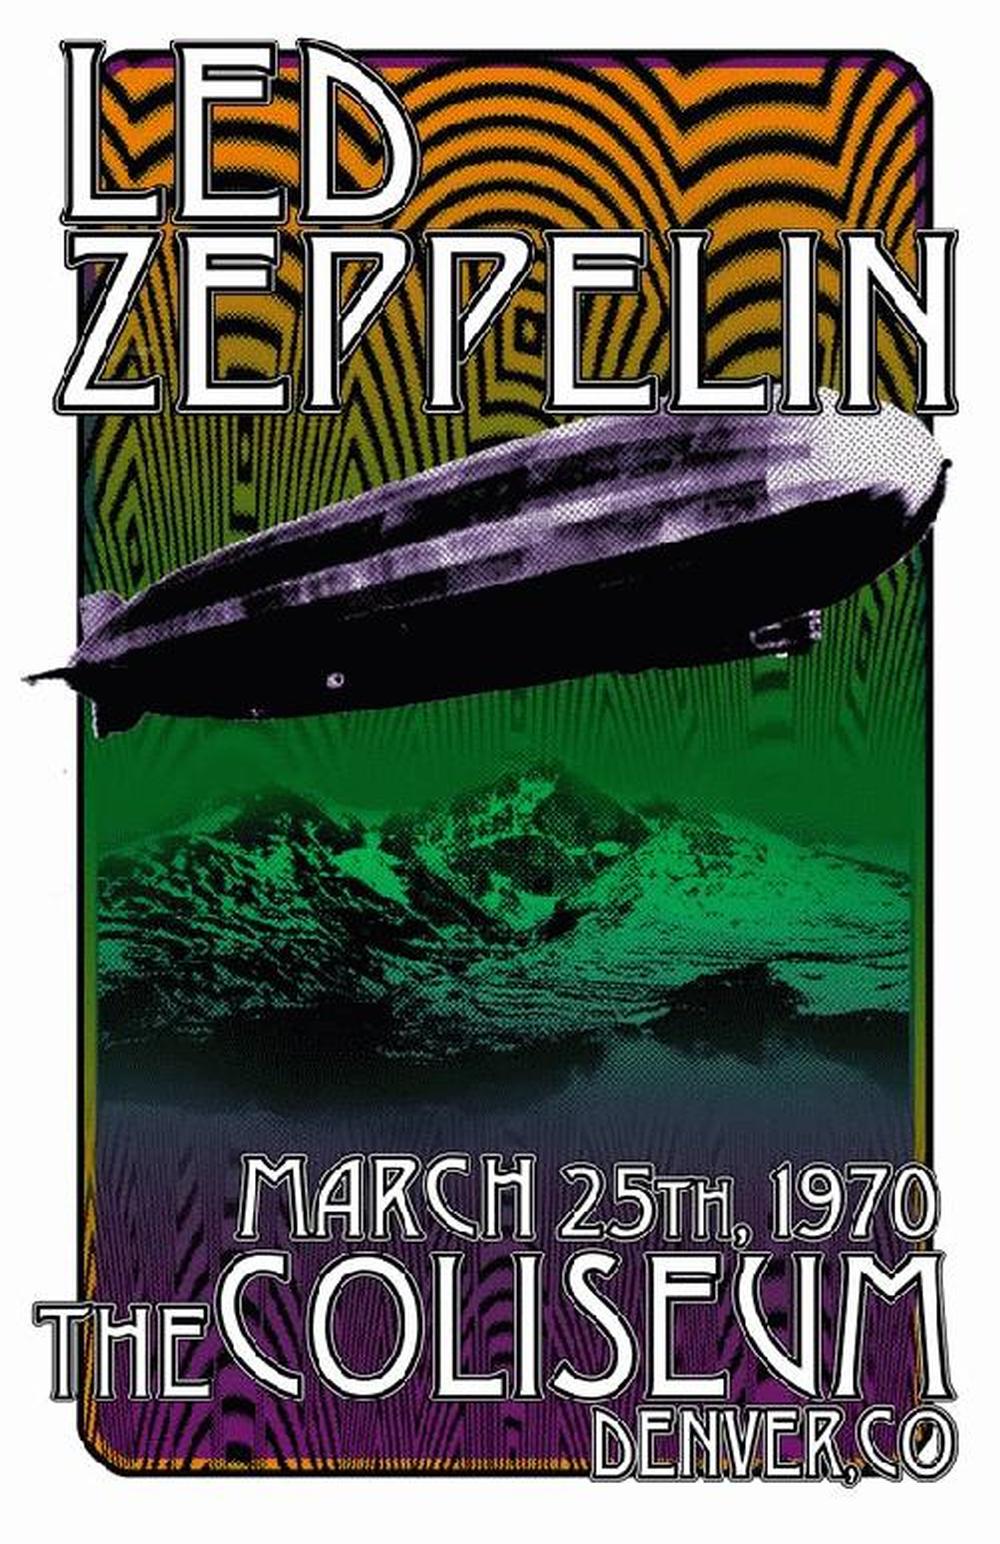 Led Zeppelin - Denver 1970 (Poster)